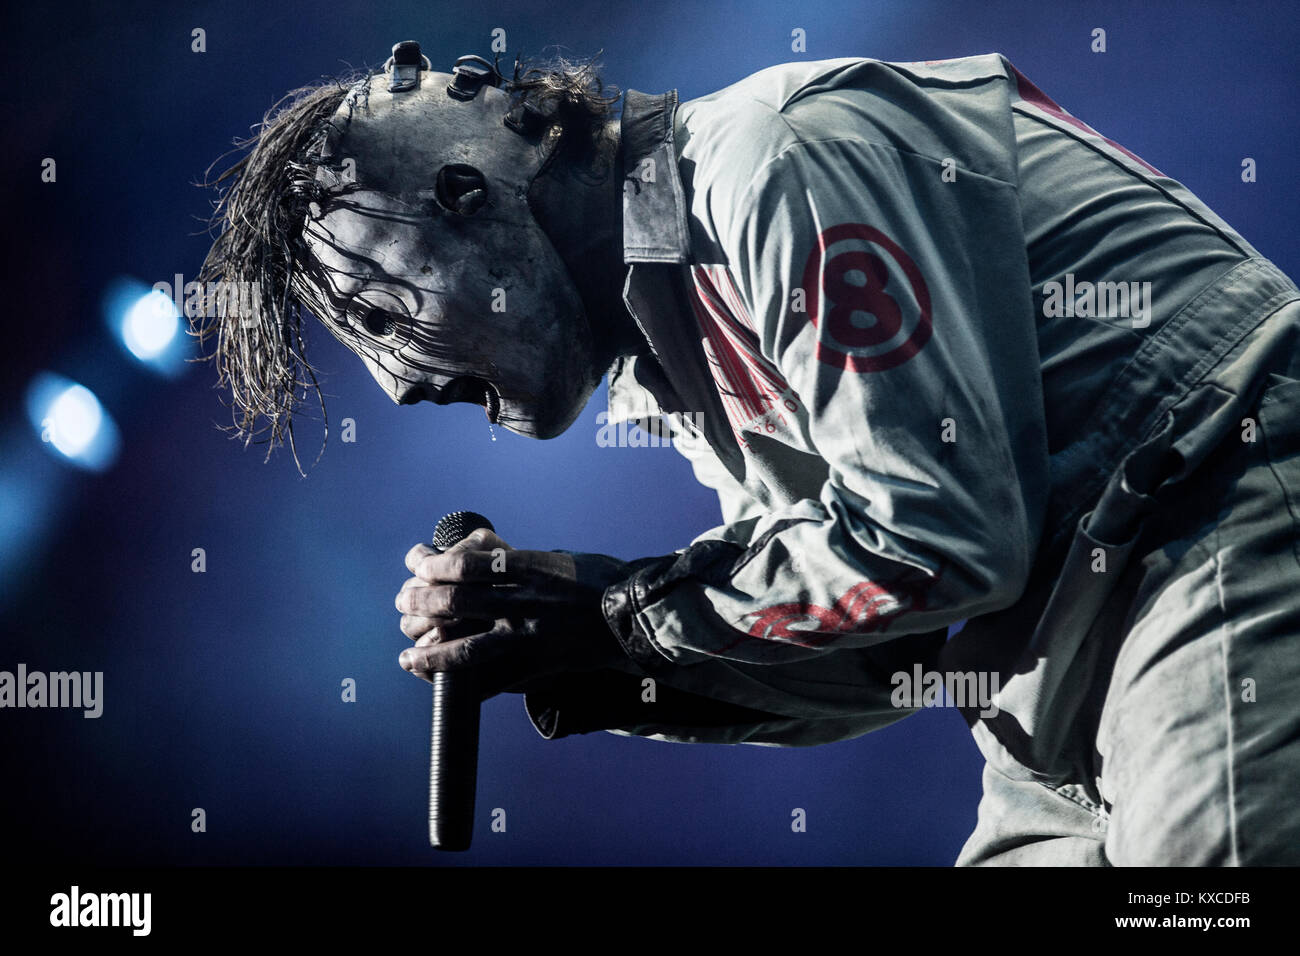 Die amerikanische Heavy Band Slipknot führt live Konzert beim Roskilde  Festival 2013. Die Band Sänger ist Corey Taylor ist maskiert und trägt ein  Overall. Dänemark 2013 Stockfotografie - Alamy